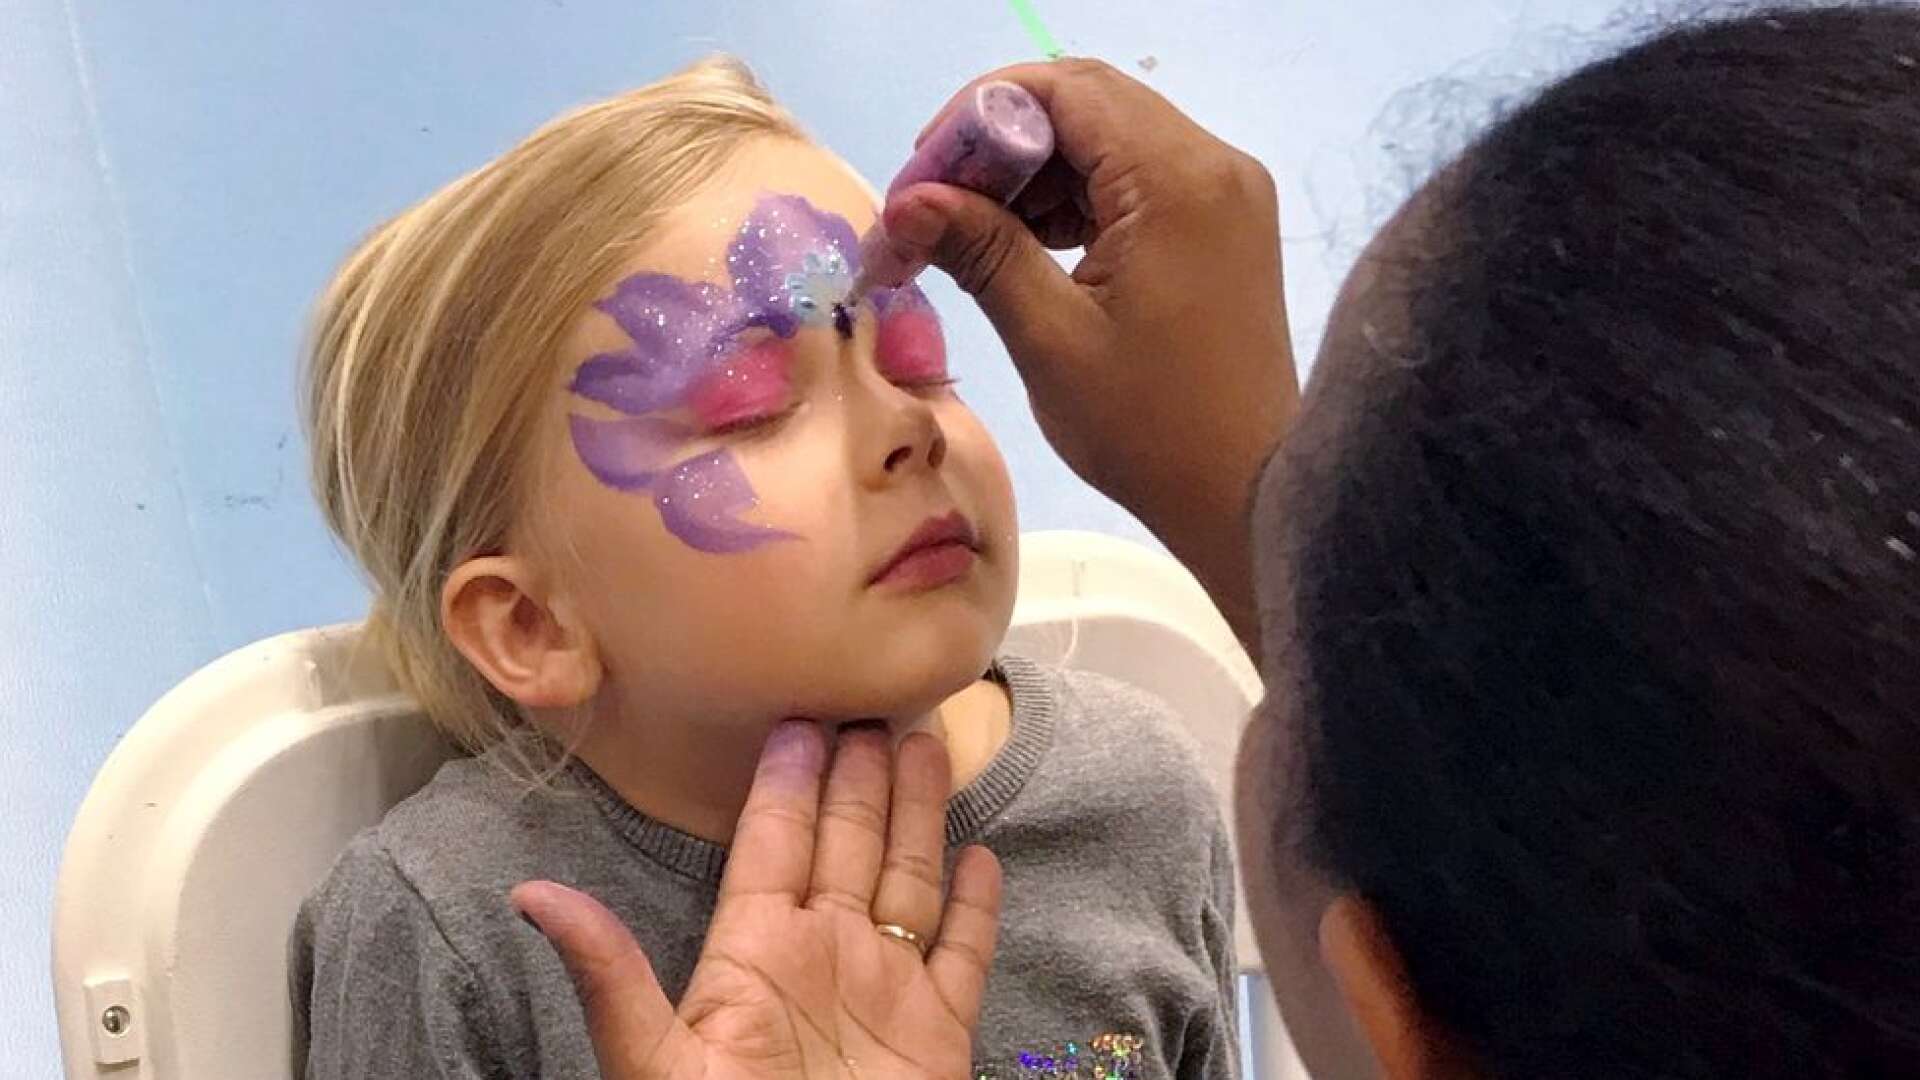 Alla barn hade möjlighet att smycka ansiktet.